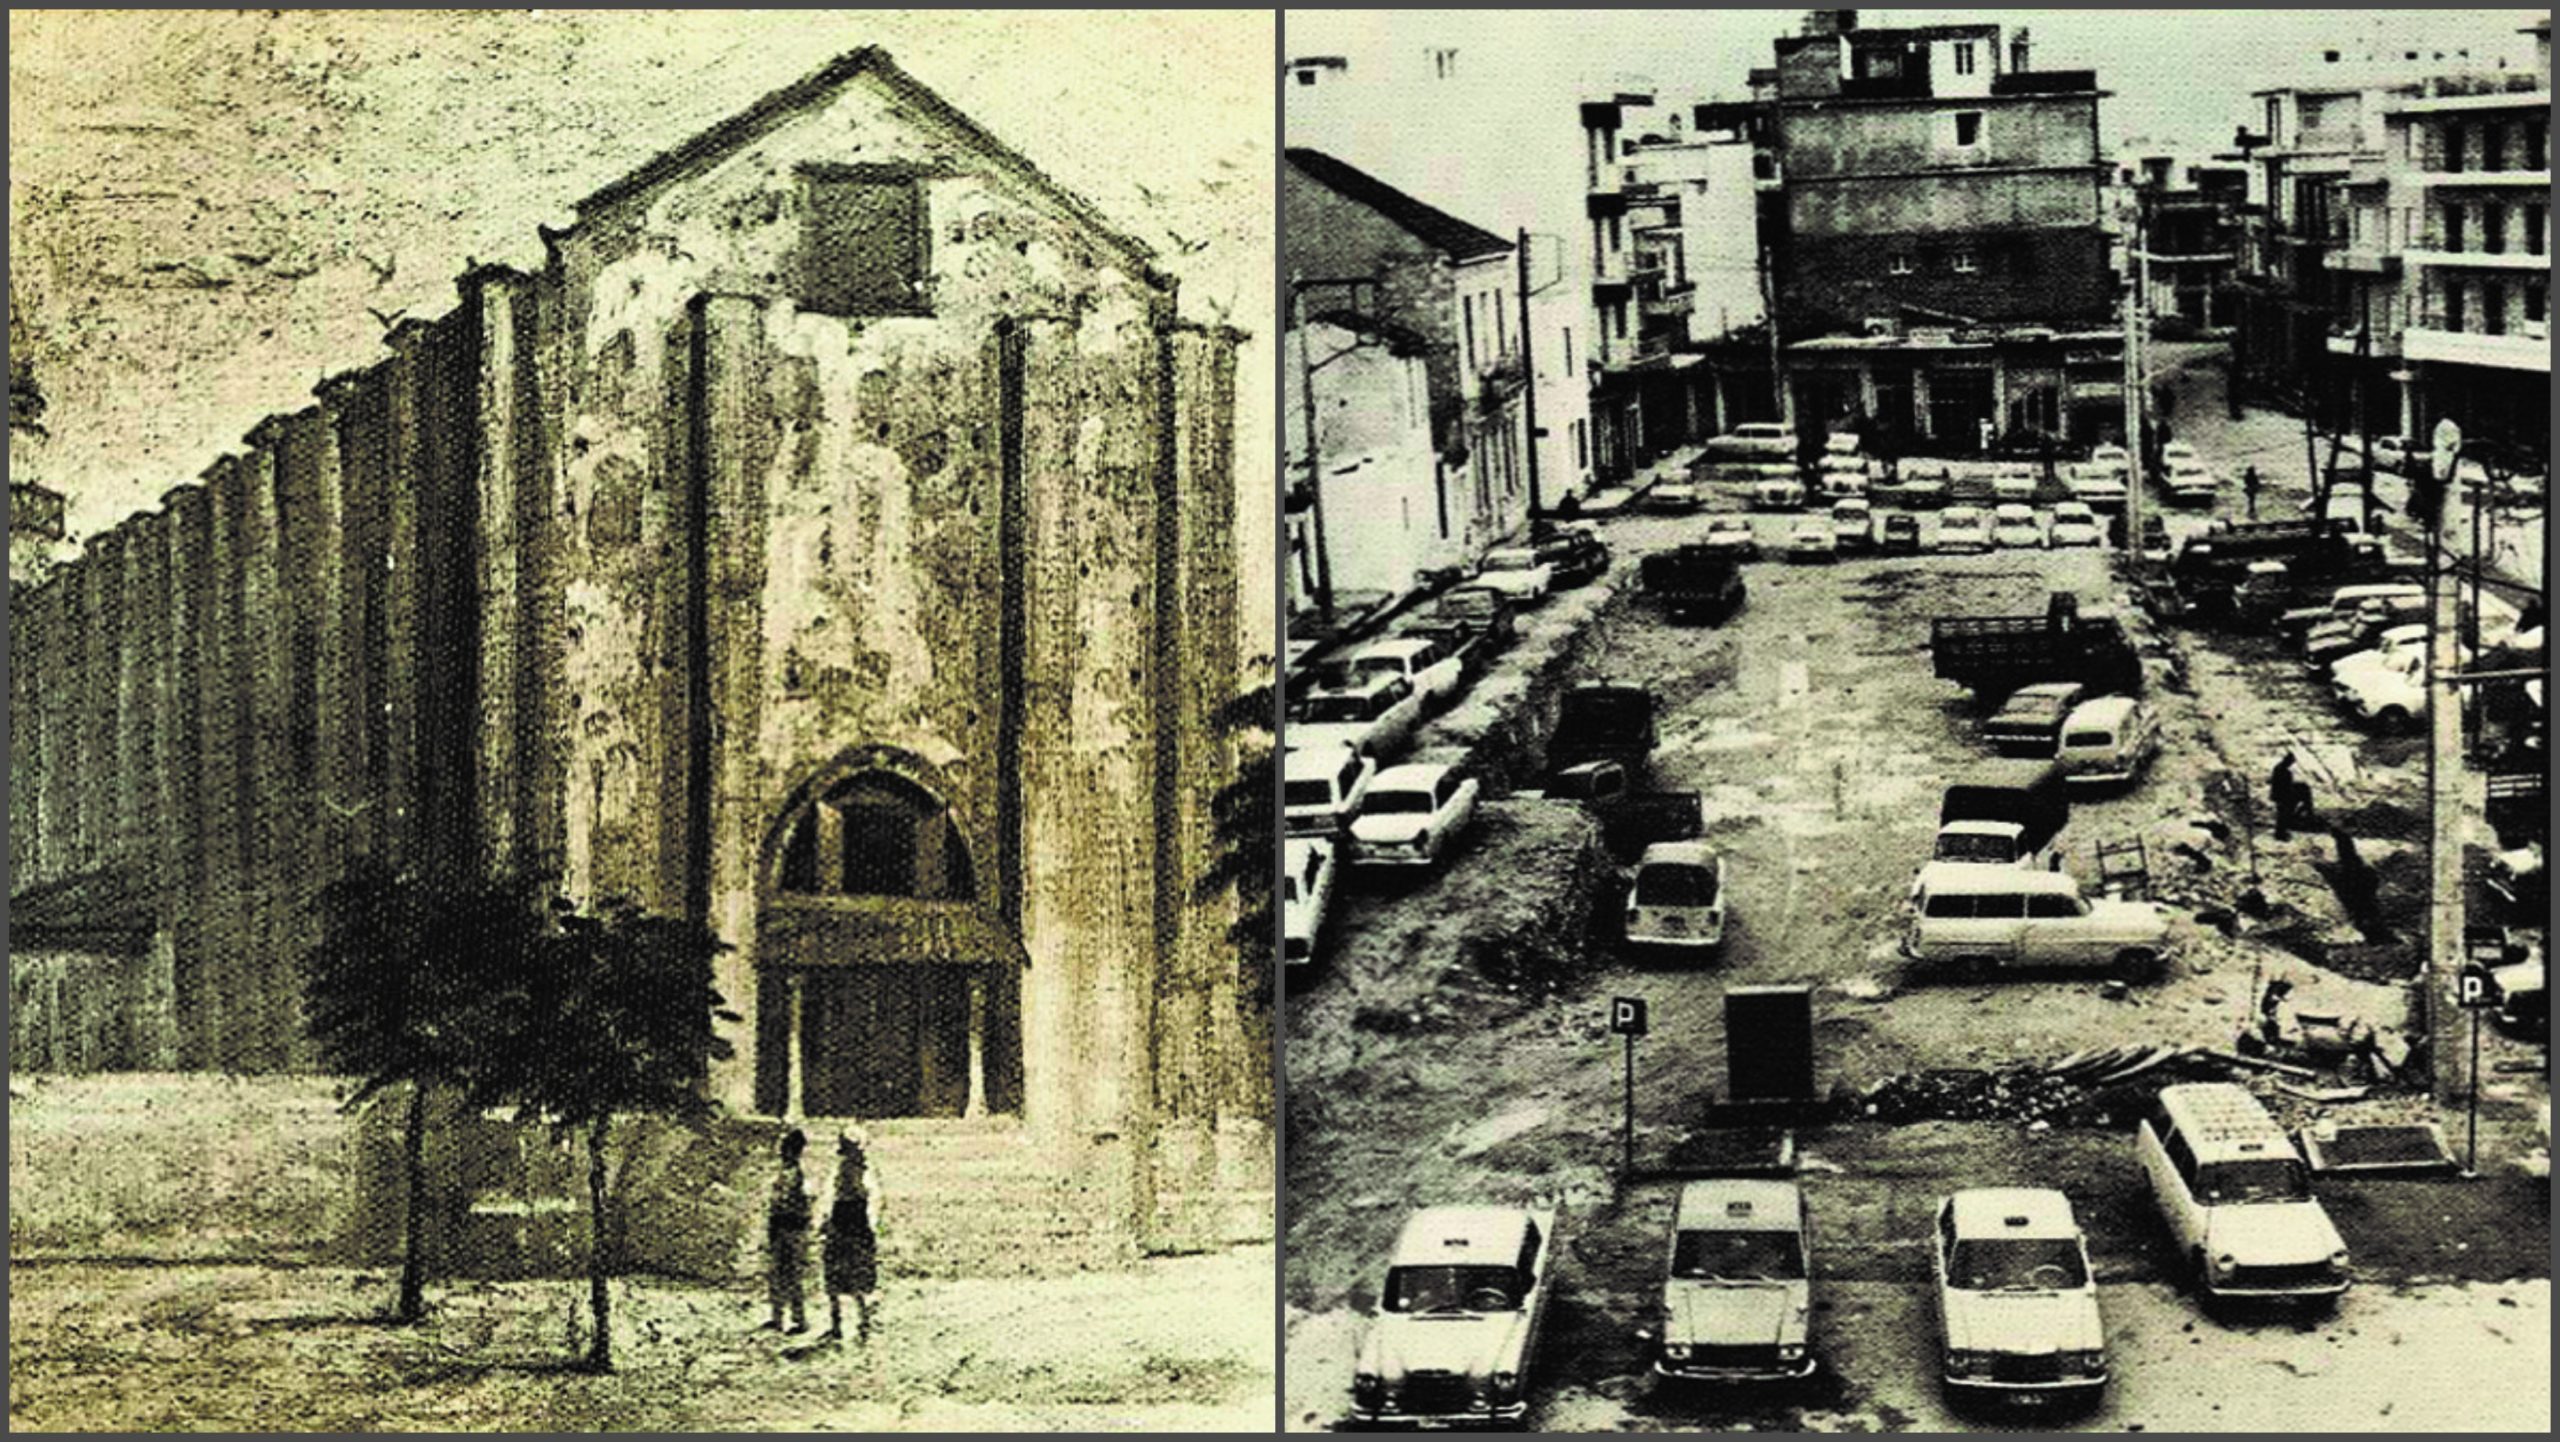 Ο ιστορικός ναός που έγινε πάρκινγκ, με απόφαση του Παττακού. Η σχέση με την κρητικοπούλα που έγινε σύζυγος του Σουλτάνου